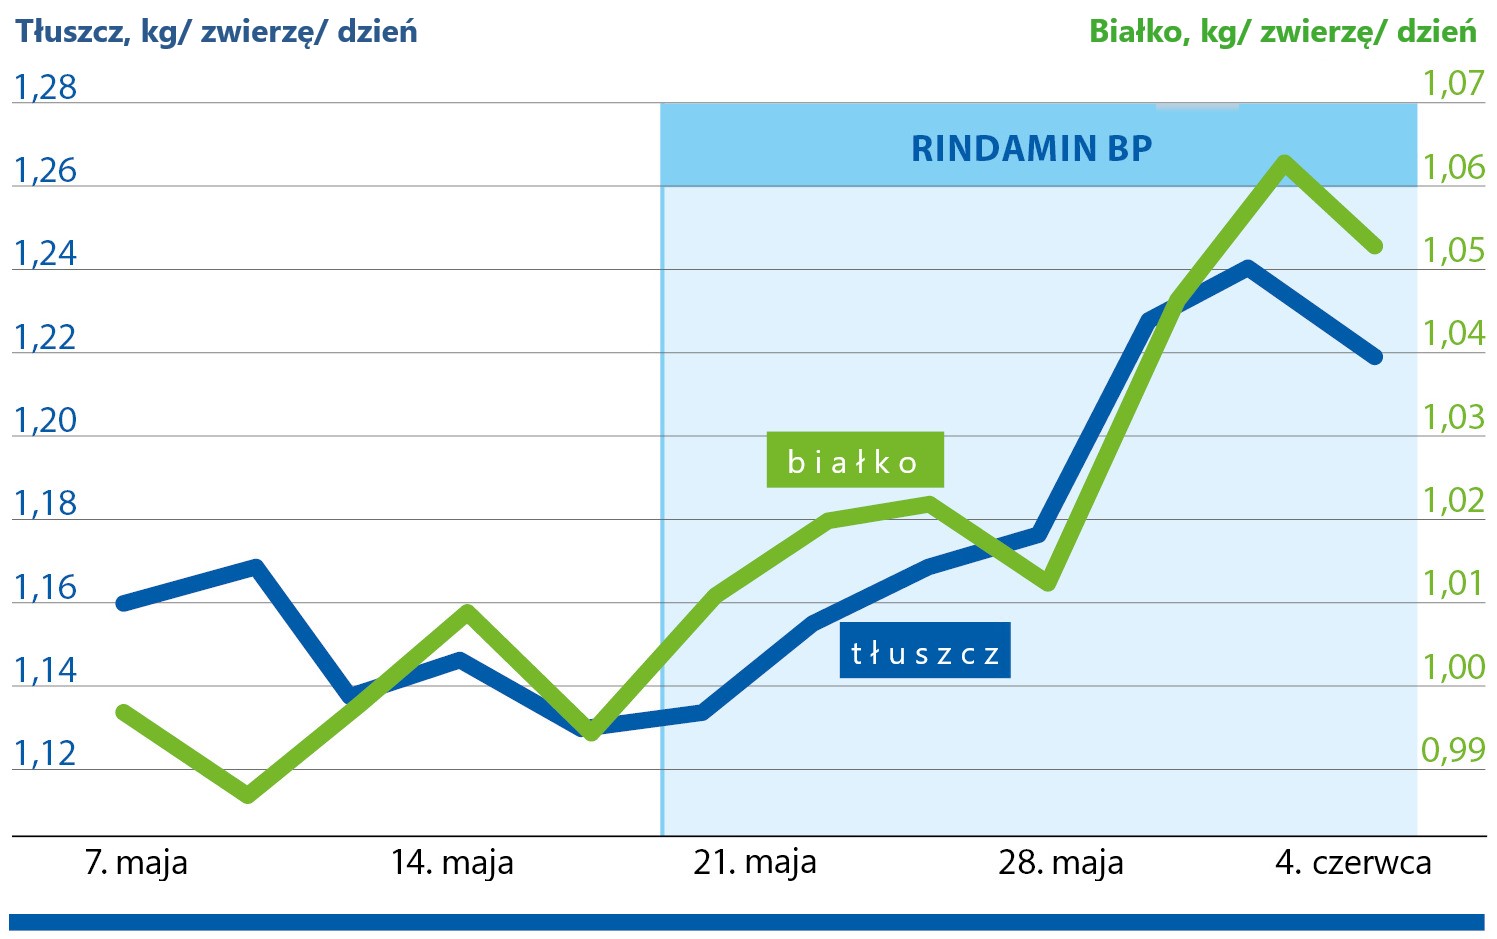 Badania praktyczne wielokrotnie potwierdziły pozytywne oddziaływanie produktu RINDAMIN BP na wydajność mleczną